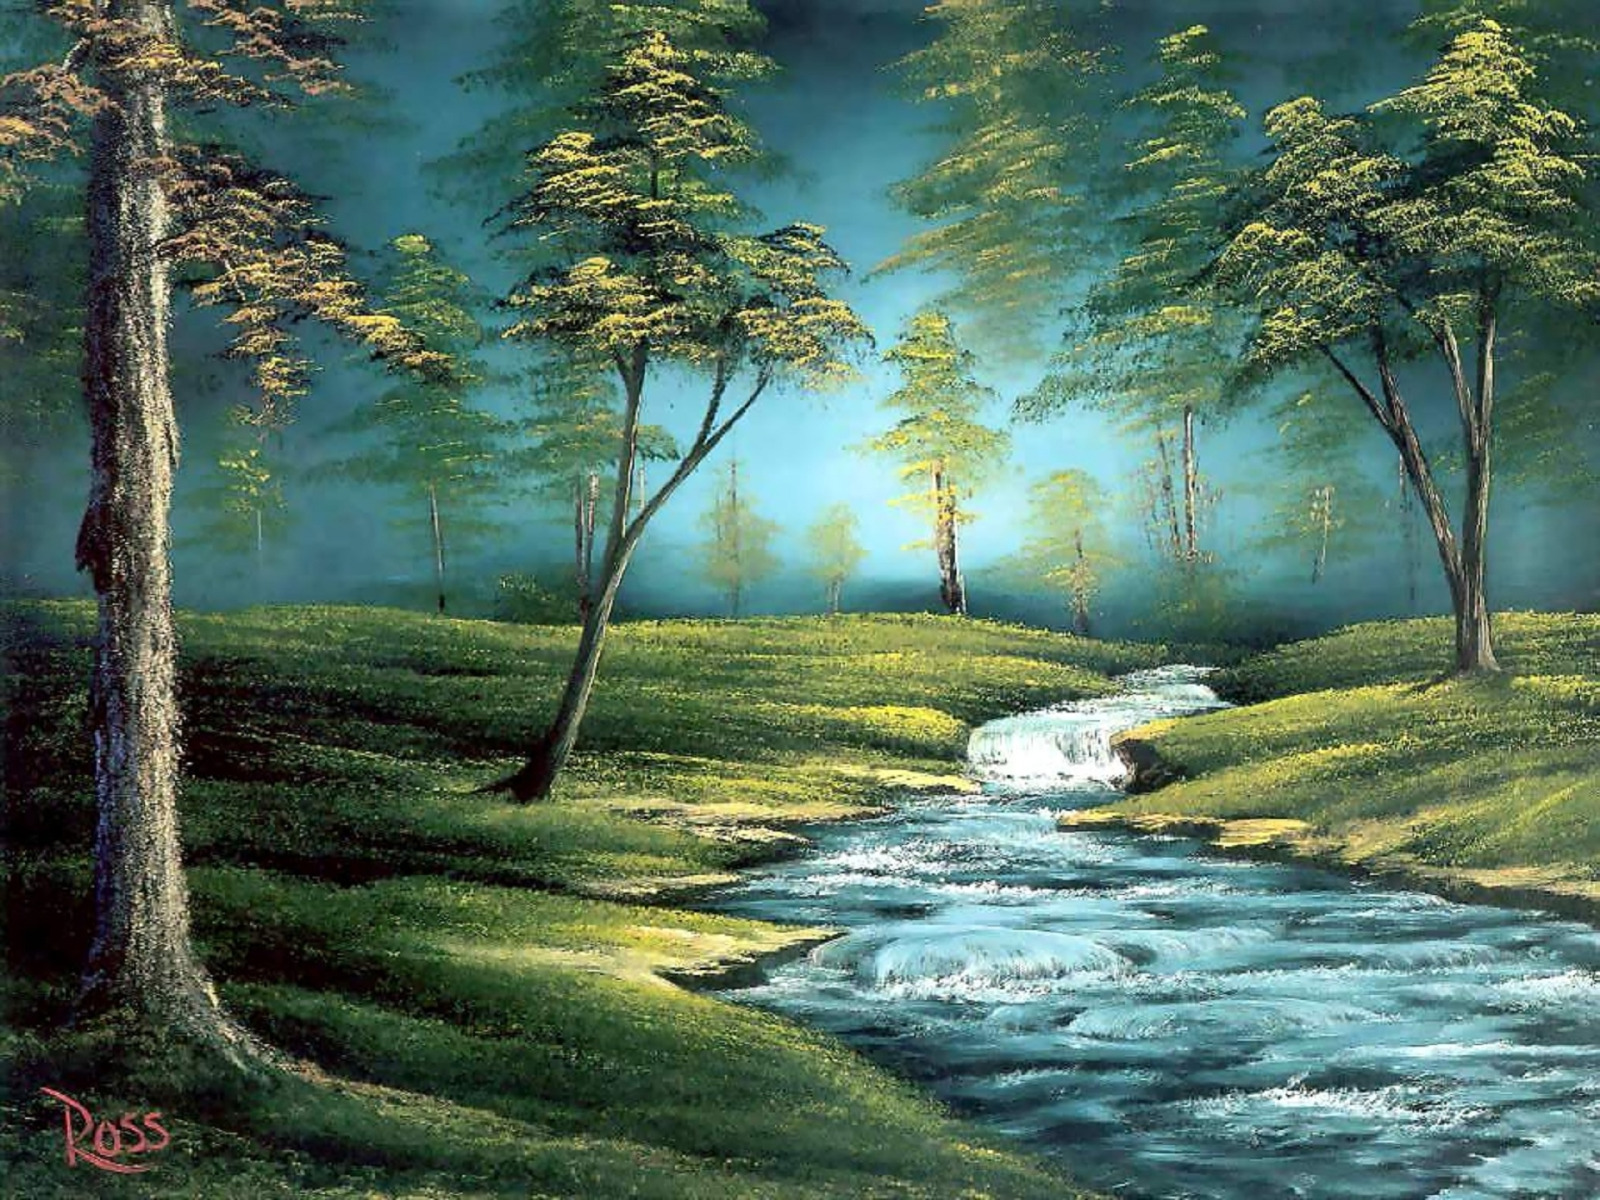 Художник Боб Росс картины. Лесной пейзаж Боб Росс. Американский художник пейзажист Боб Росс. Боб Росс весенний пейзаж. Нет это звонко тонко в ручье